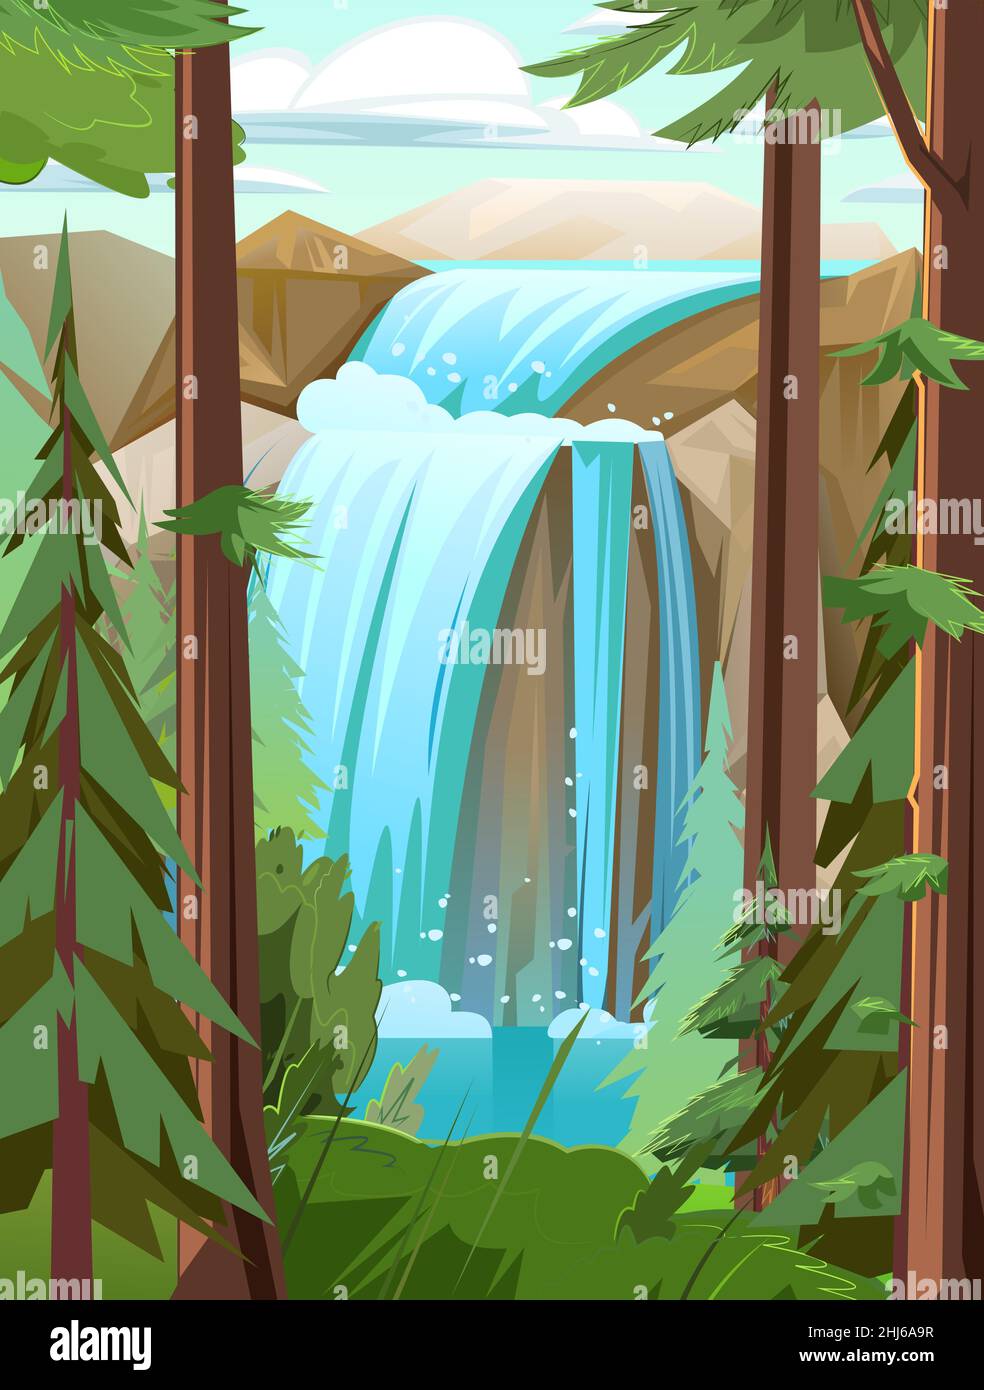 Kleine Landschaft mit Wasserfall zwischen Felsen. Kaskade schimmert nach unten. Unter Nadelbäumen. Fließendes Wasser. Schöner Cartoon-Stil. Flaches Design. Vektor. Stock Vektor